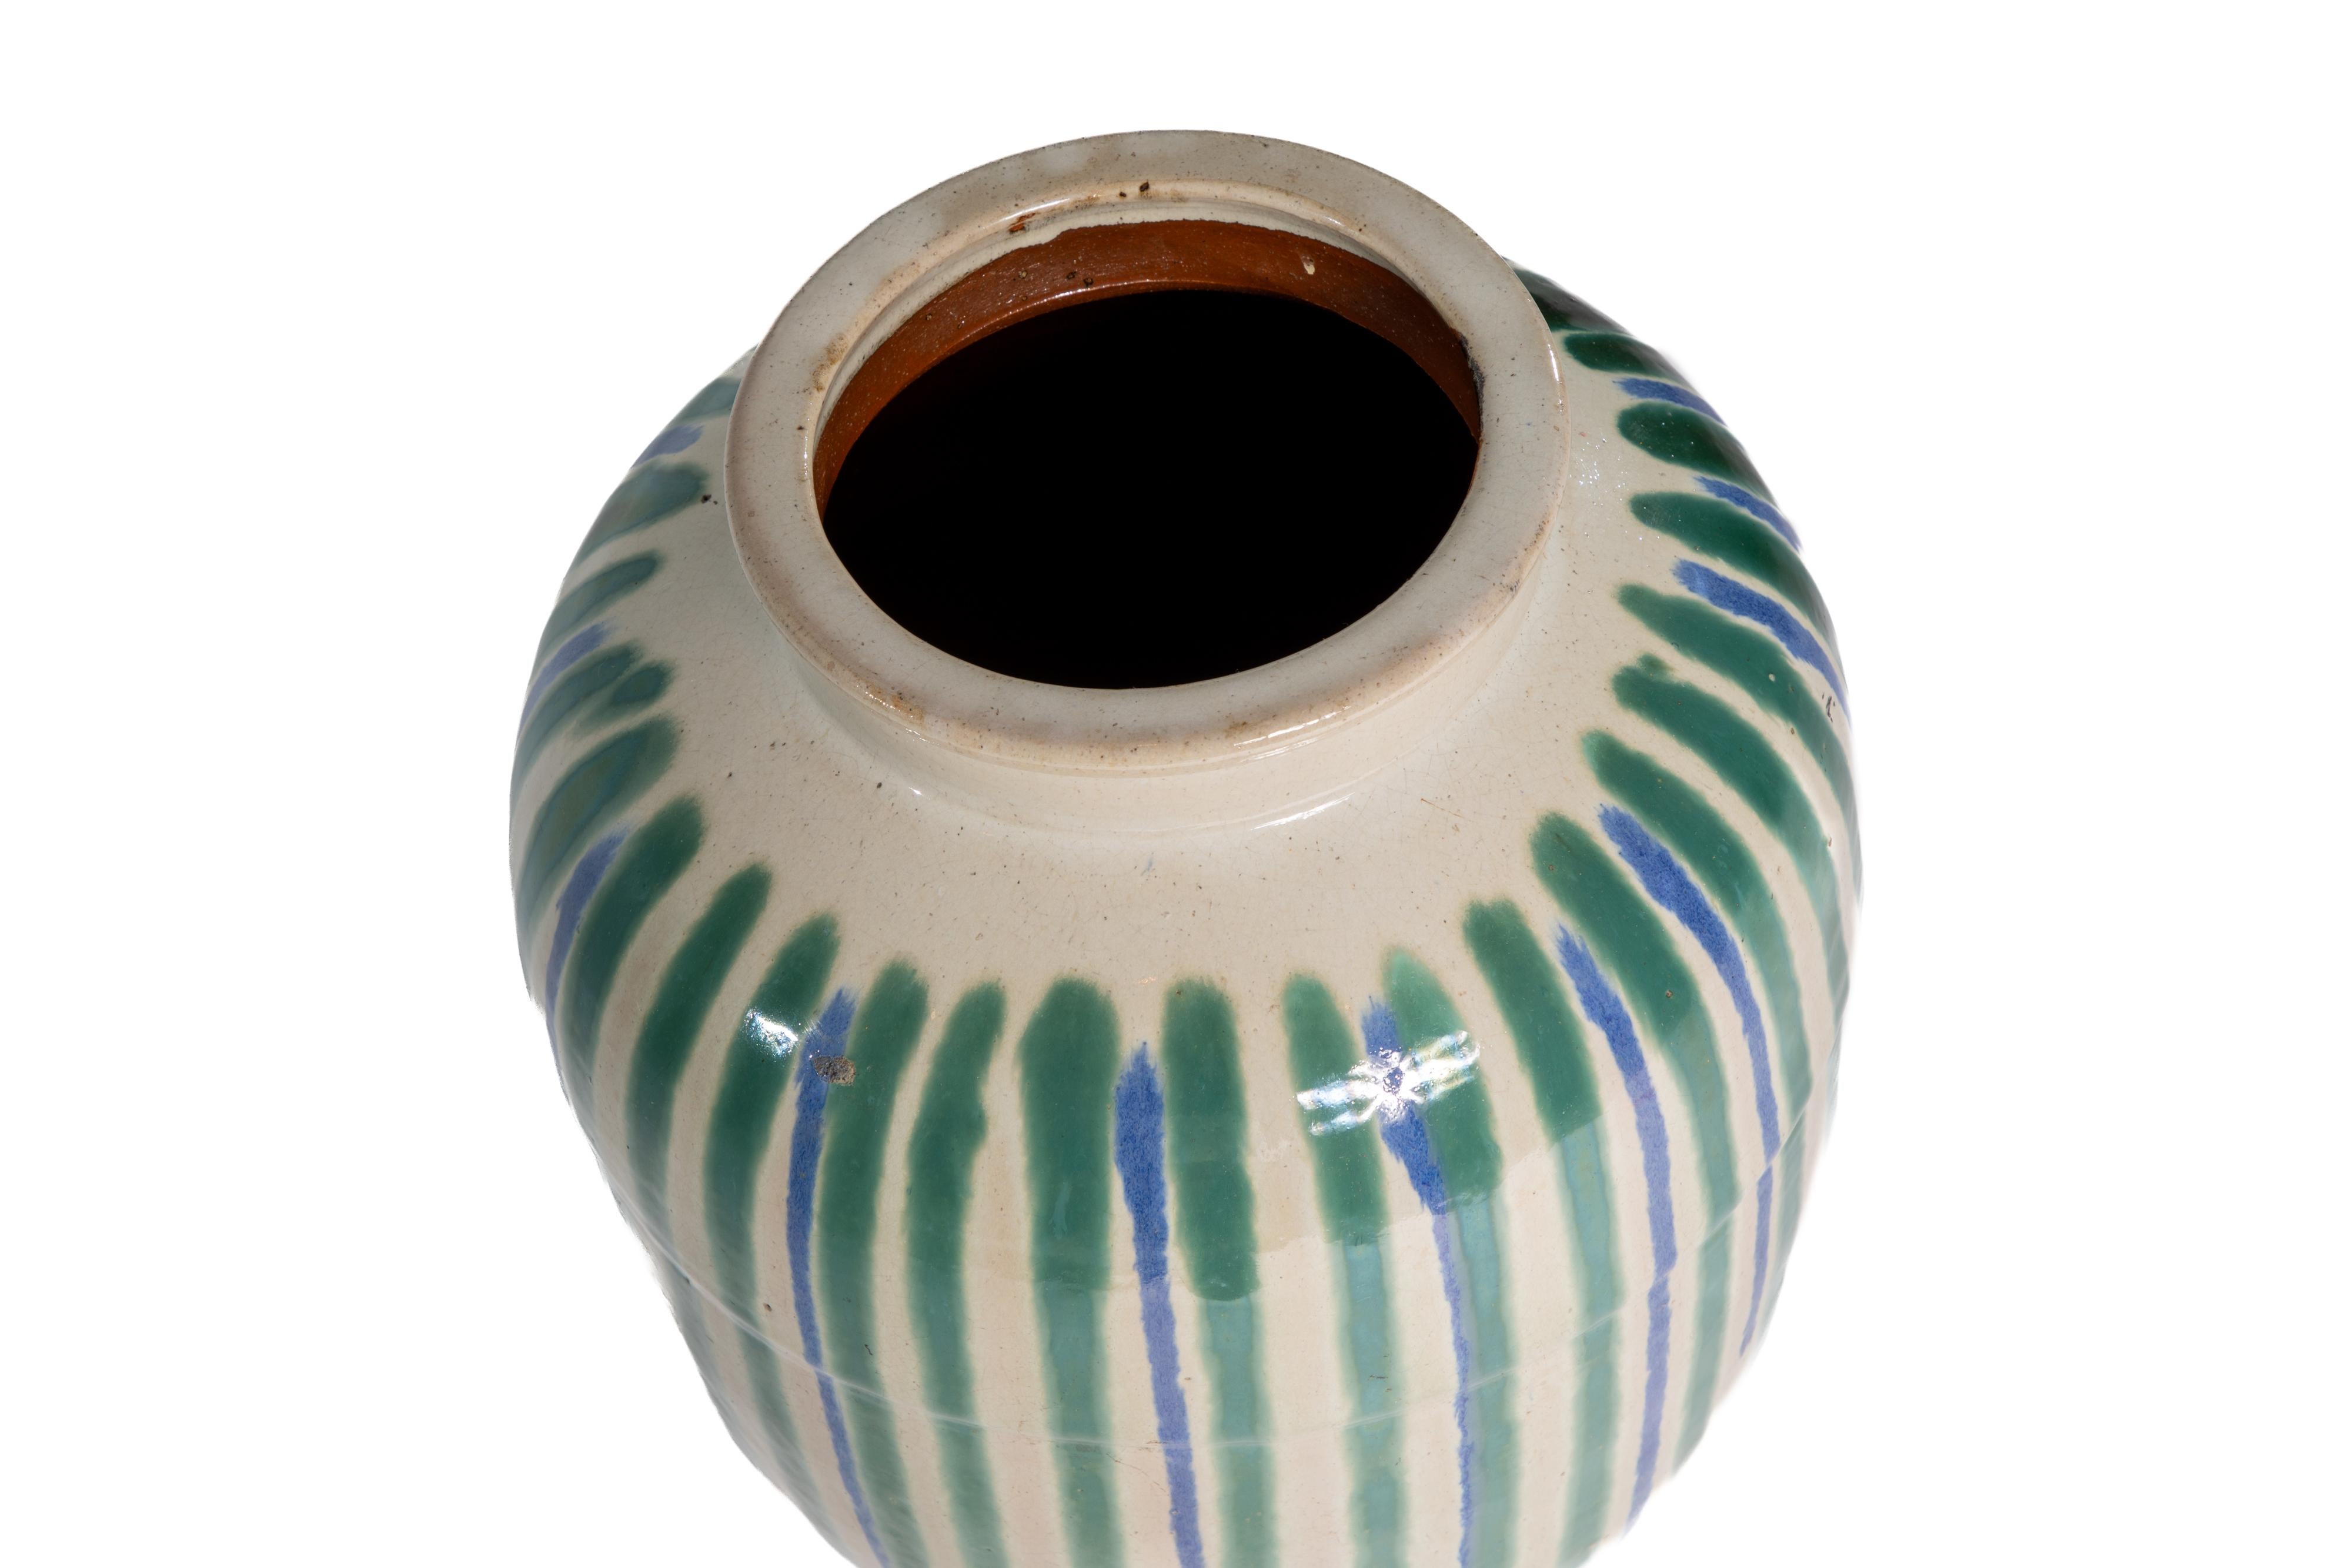 Grand vase en grès émaillé d'origine japonaise.  Base crème avec décorations bleues et vertes.
Marqué sur la face inférieure d'un texte.